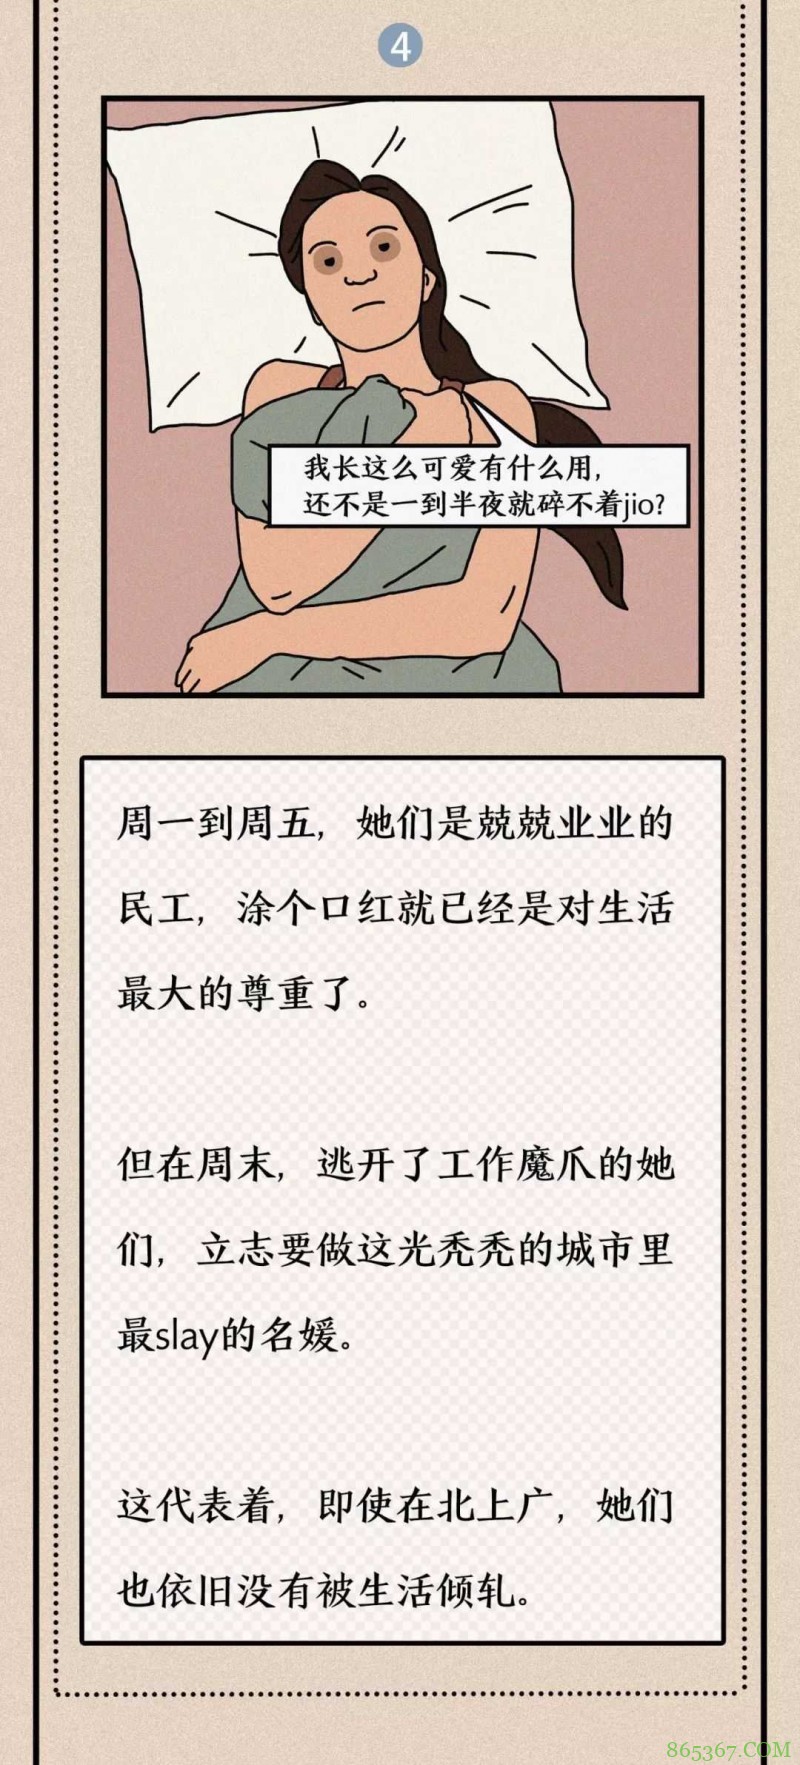 奇趣漫画《北上广名媛生活指南》 上班族名媛周末怎么过